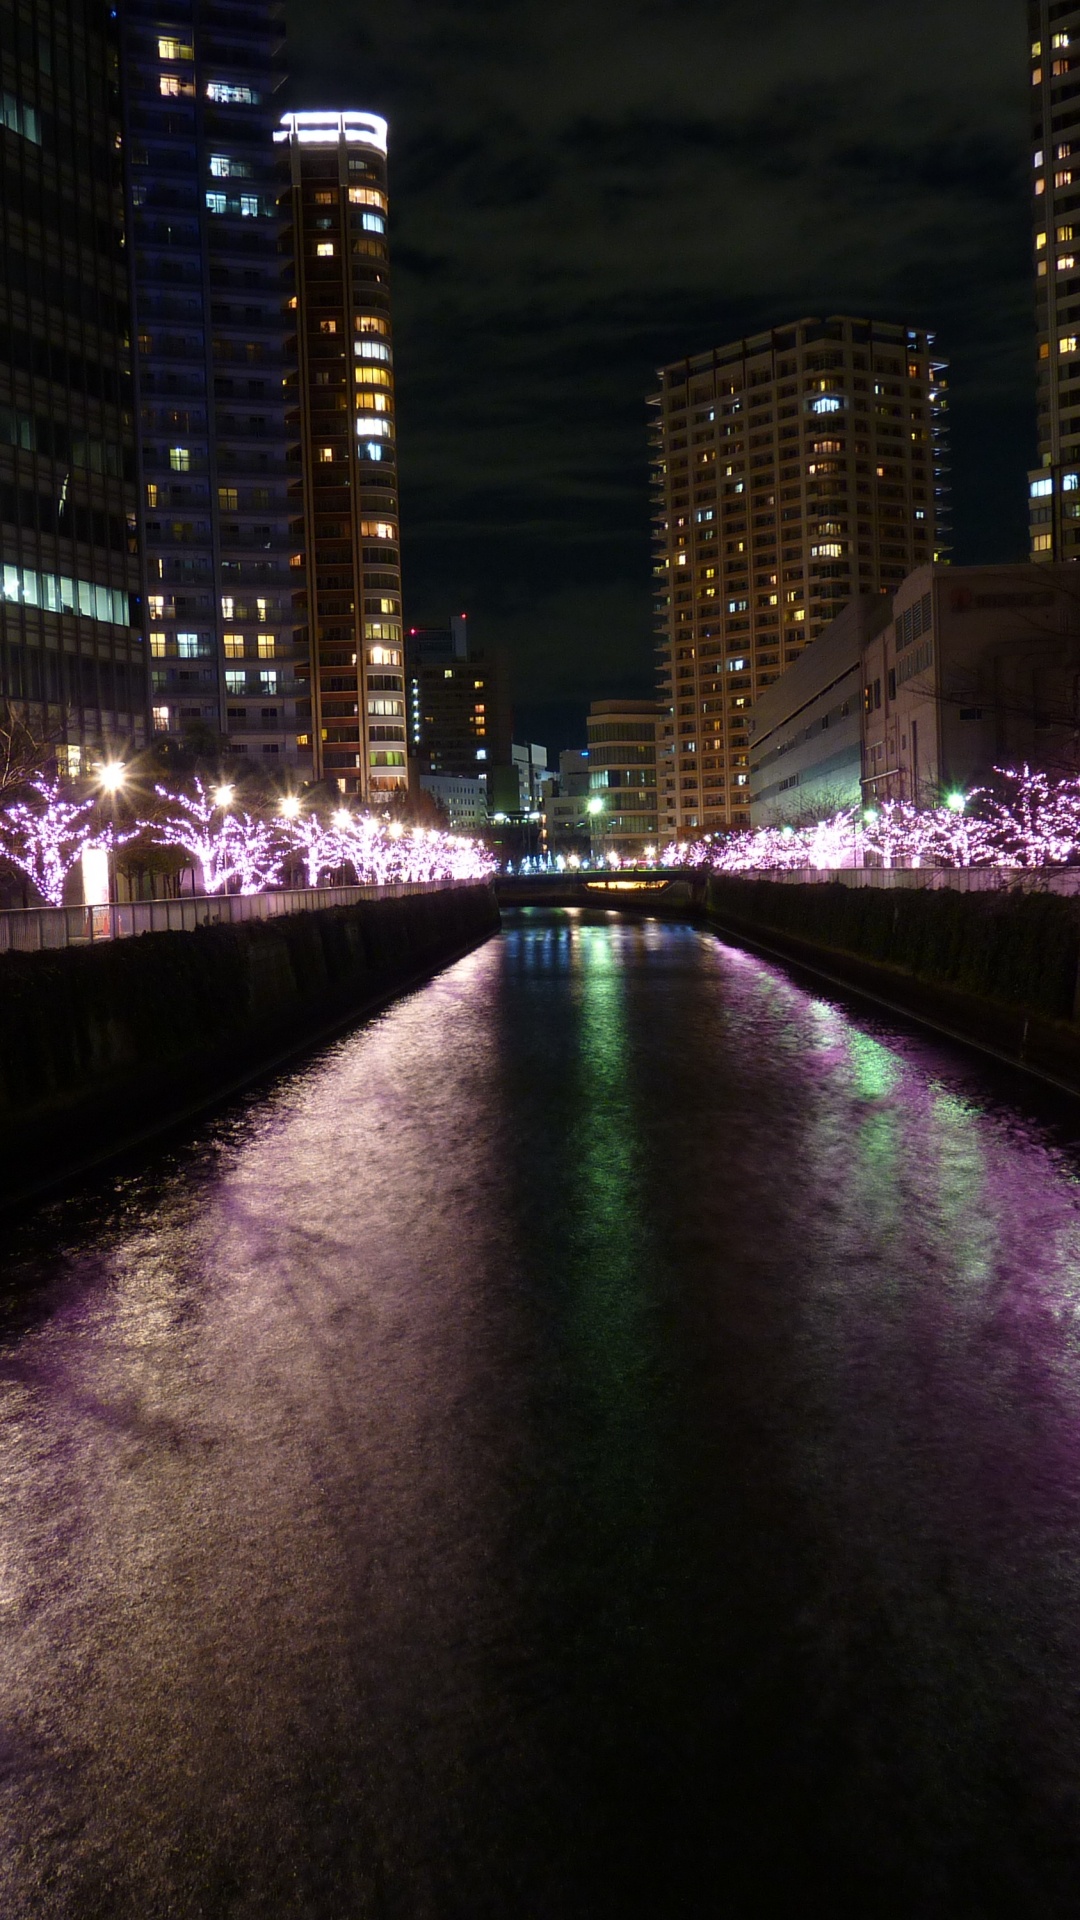 Luces Púrpuras en el Puente Durante la Noche. Wallpaper in 1080x1920 Resolution